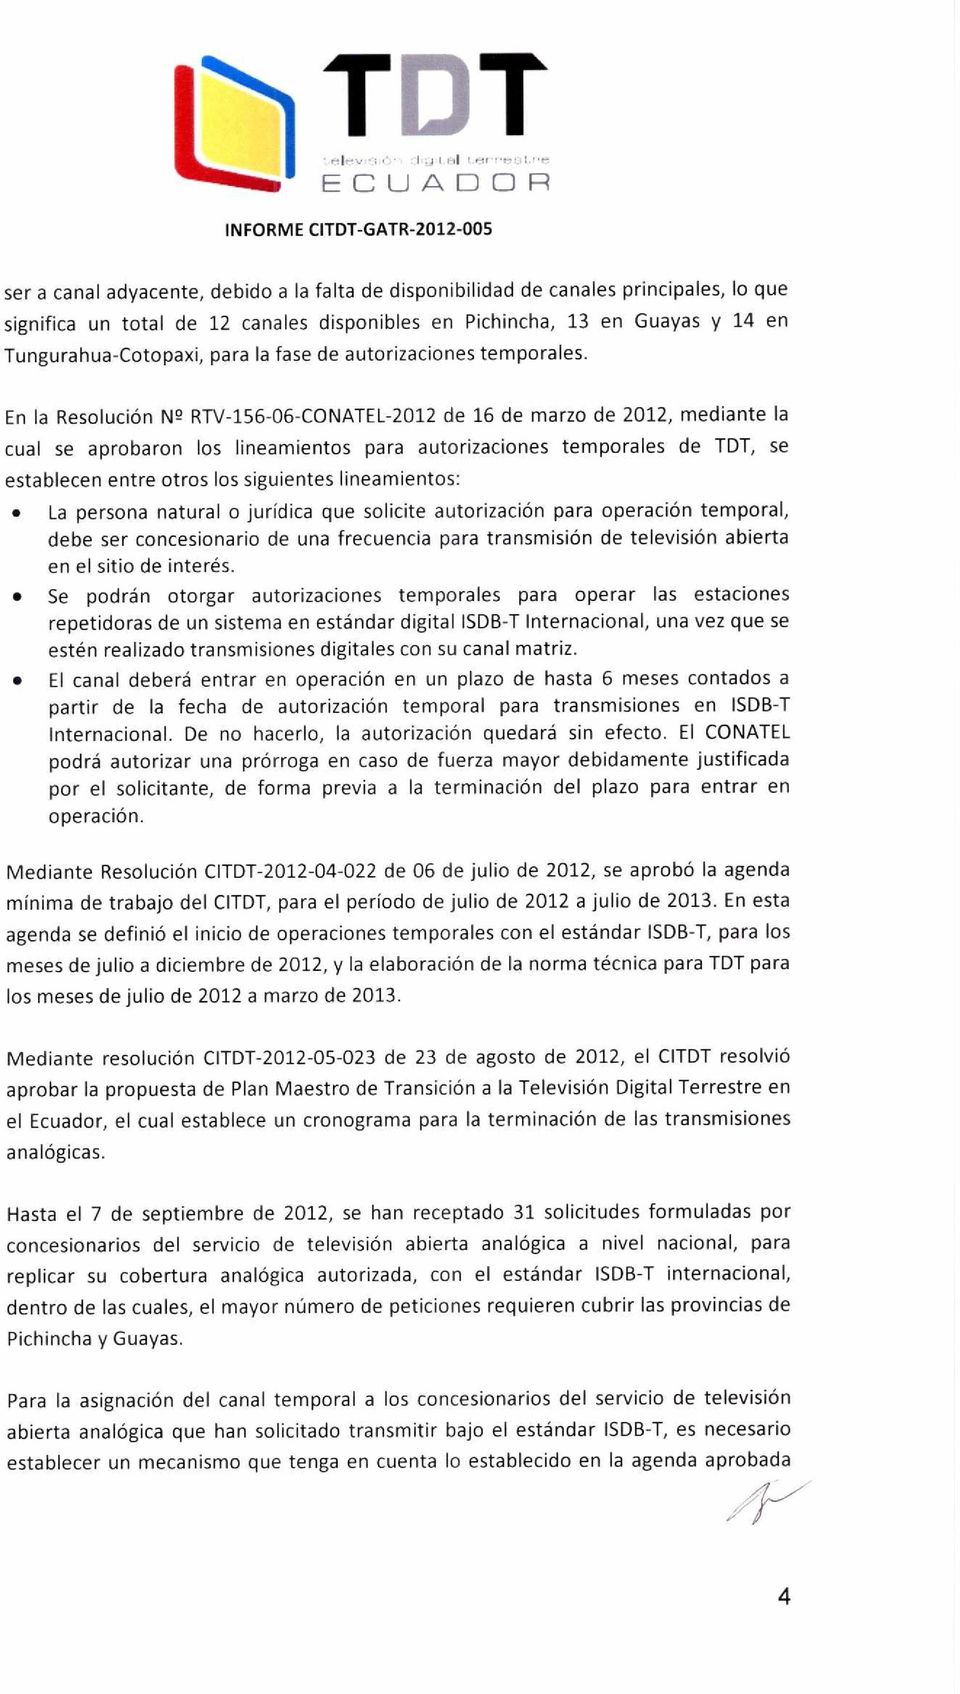 En la Resolución N 2 RTV-156-06-CONATEL-2012 de 16 de marzo de 2012, mediante la cual se aprobaron los lineamientos para autorizaciones temporales de TDT, se establecen entre otros los siguientes